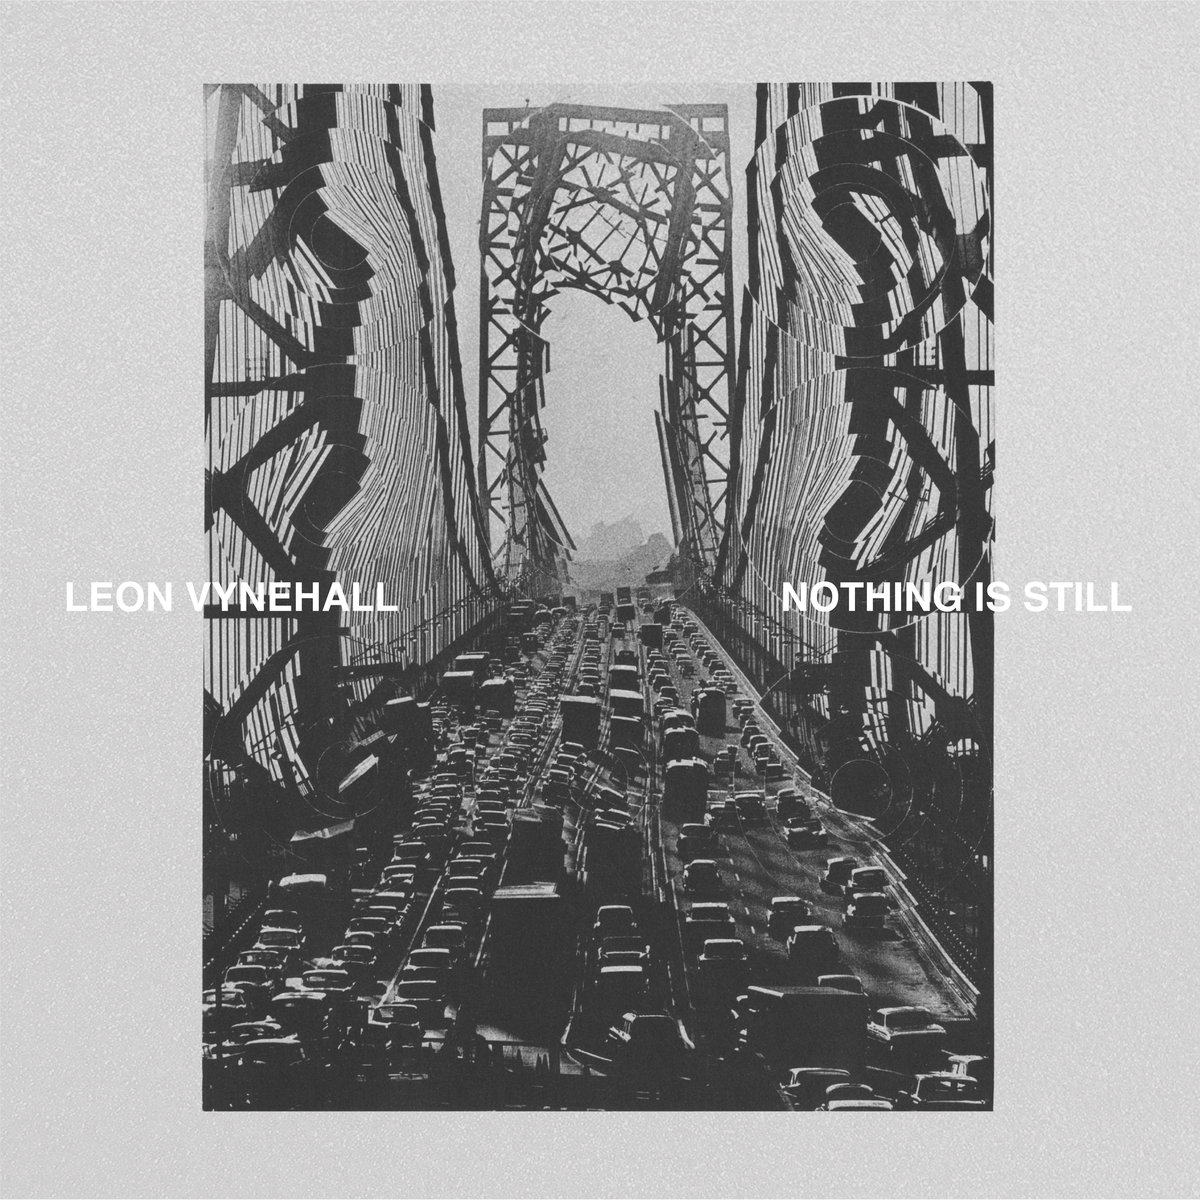 I migliori dischi pop del 2018 -Leon Vynehall